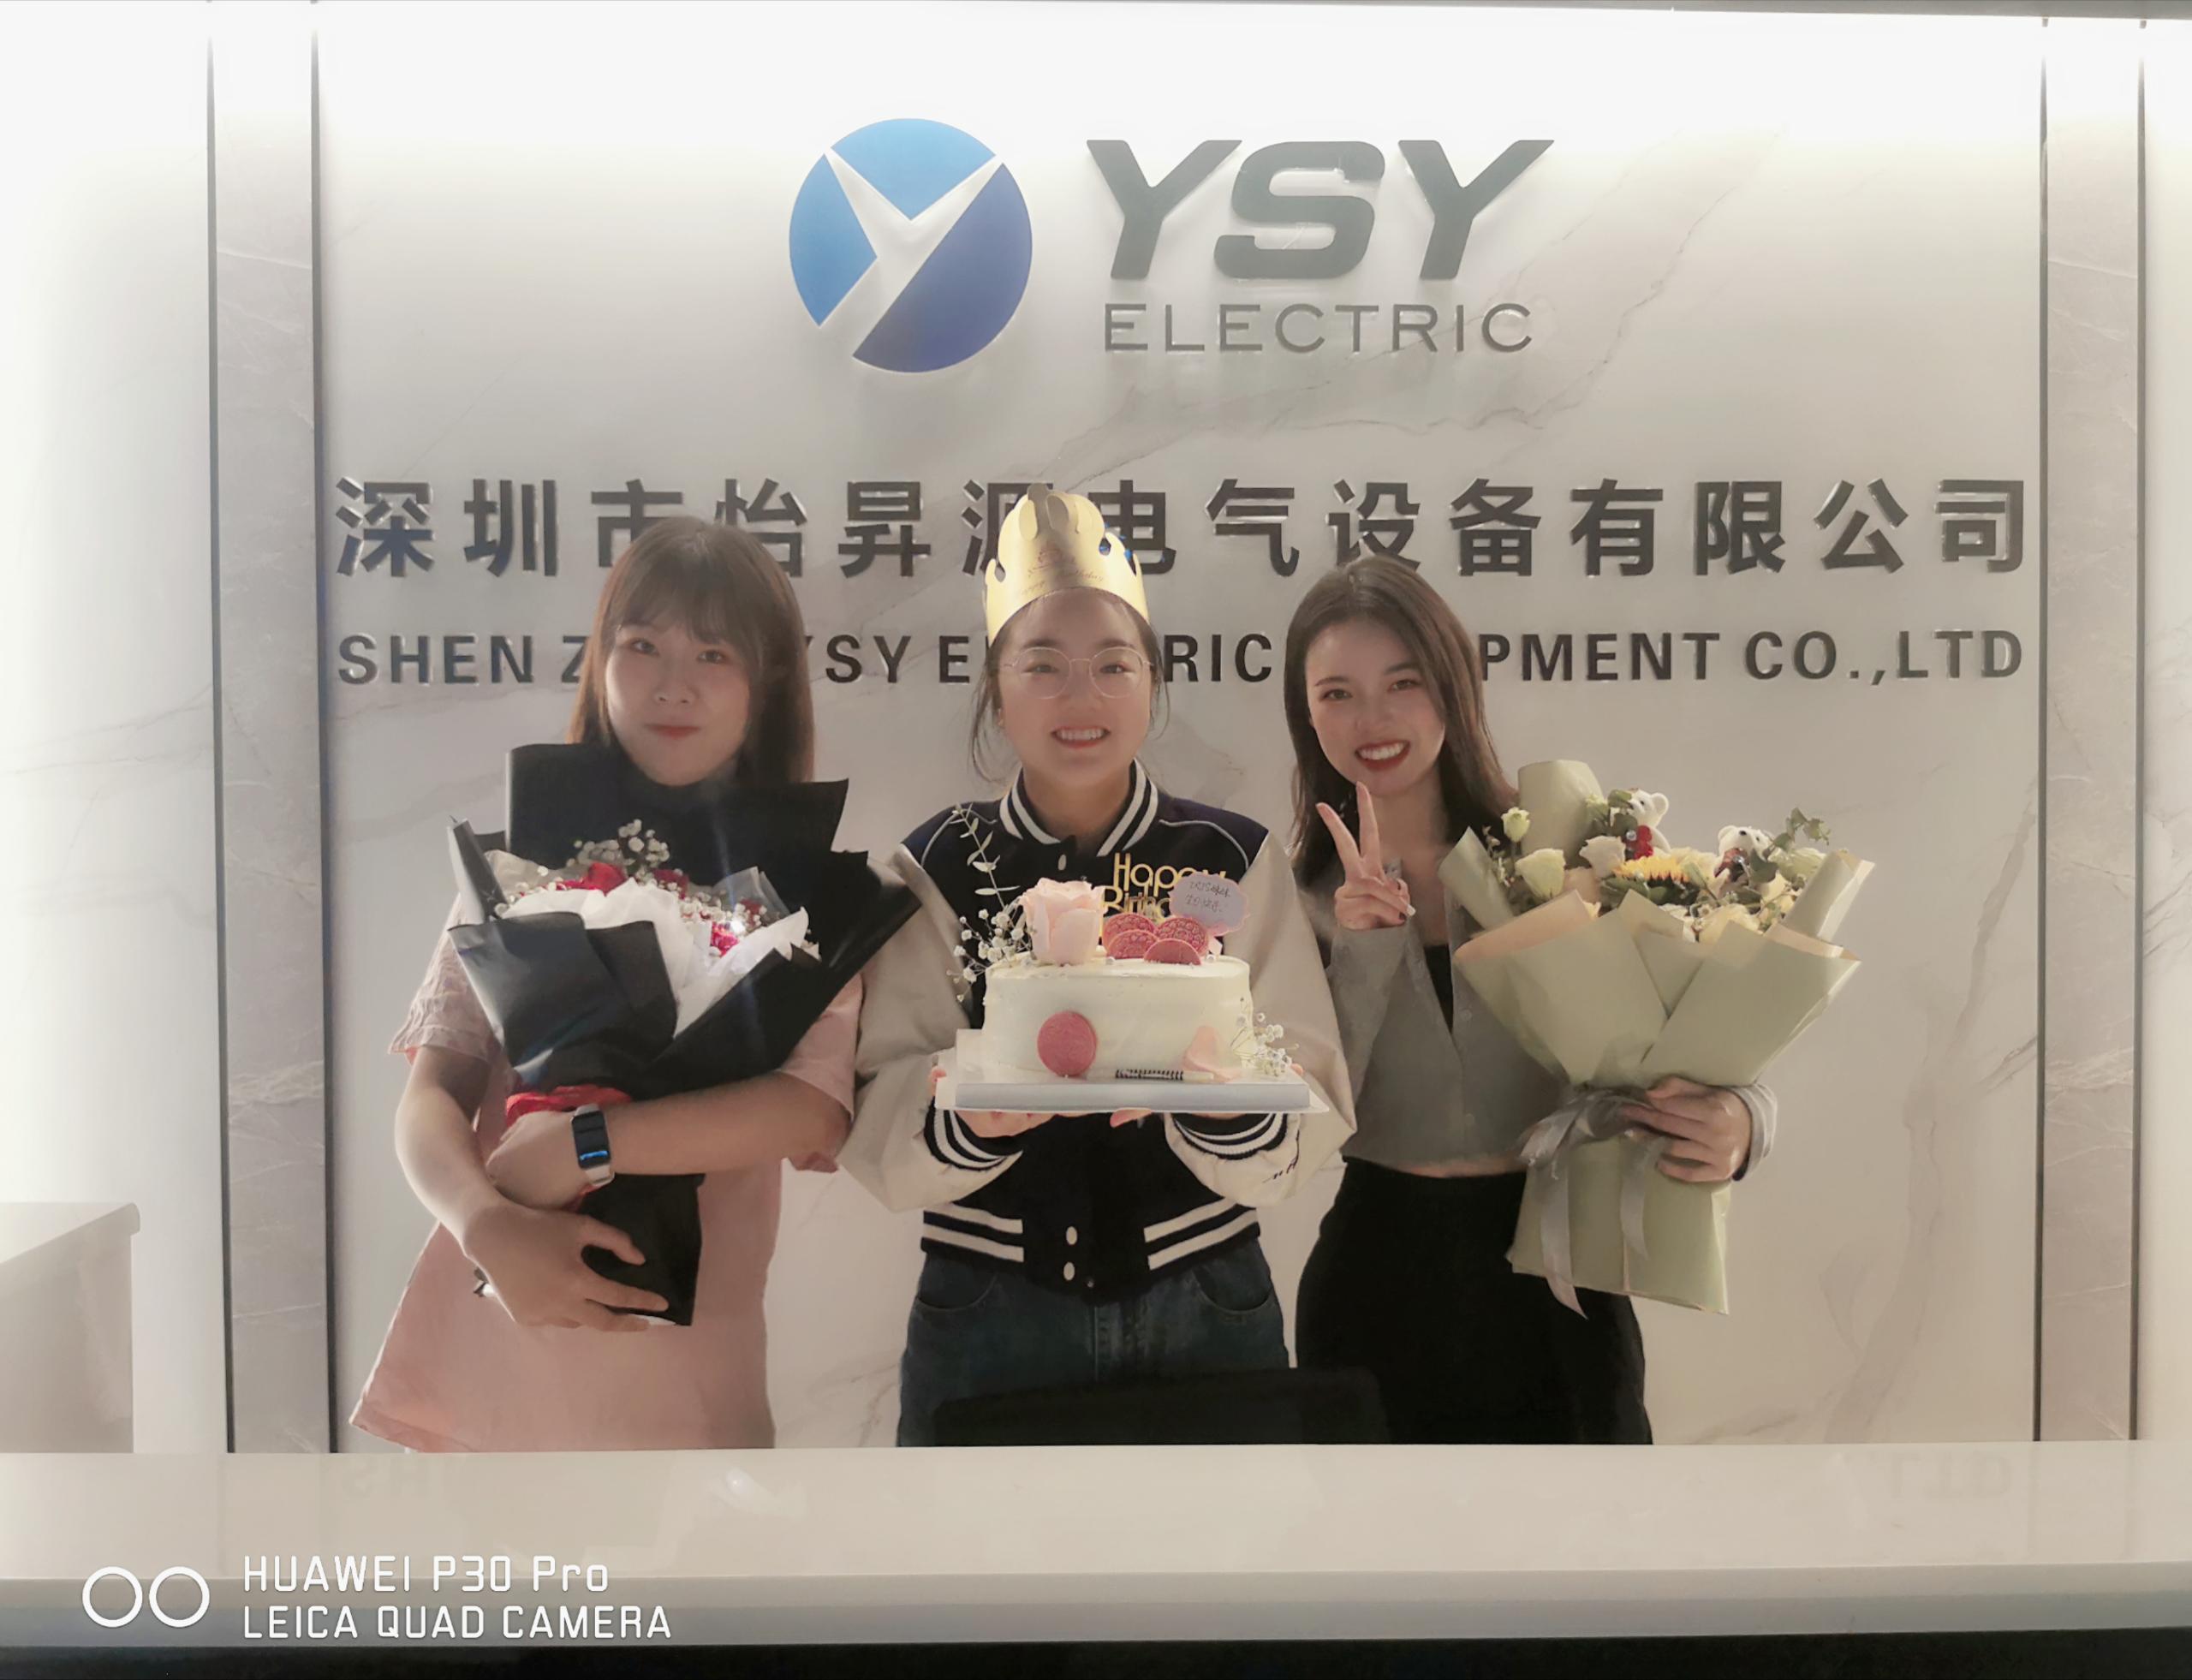 გილოცავთ დაბადების დღეს YSY Electric-ის 2 გაყიდვებს!